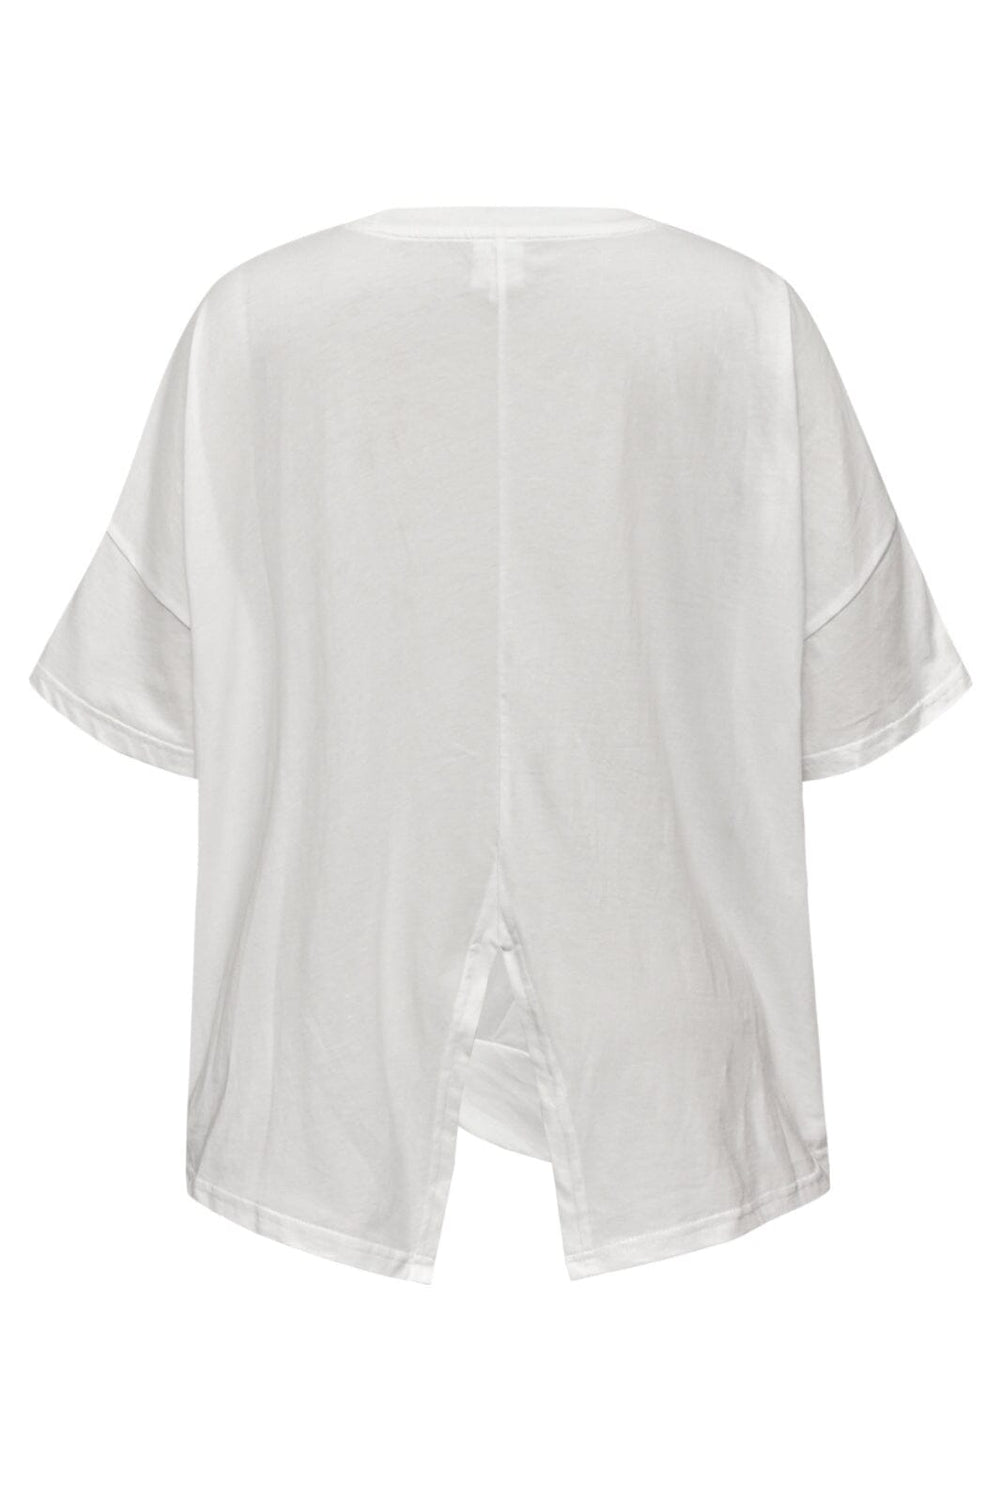 Gossia - MilaGO Tee - Off-white T-shirts 